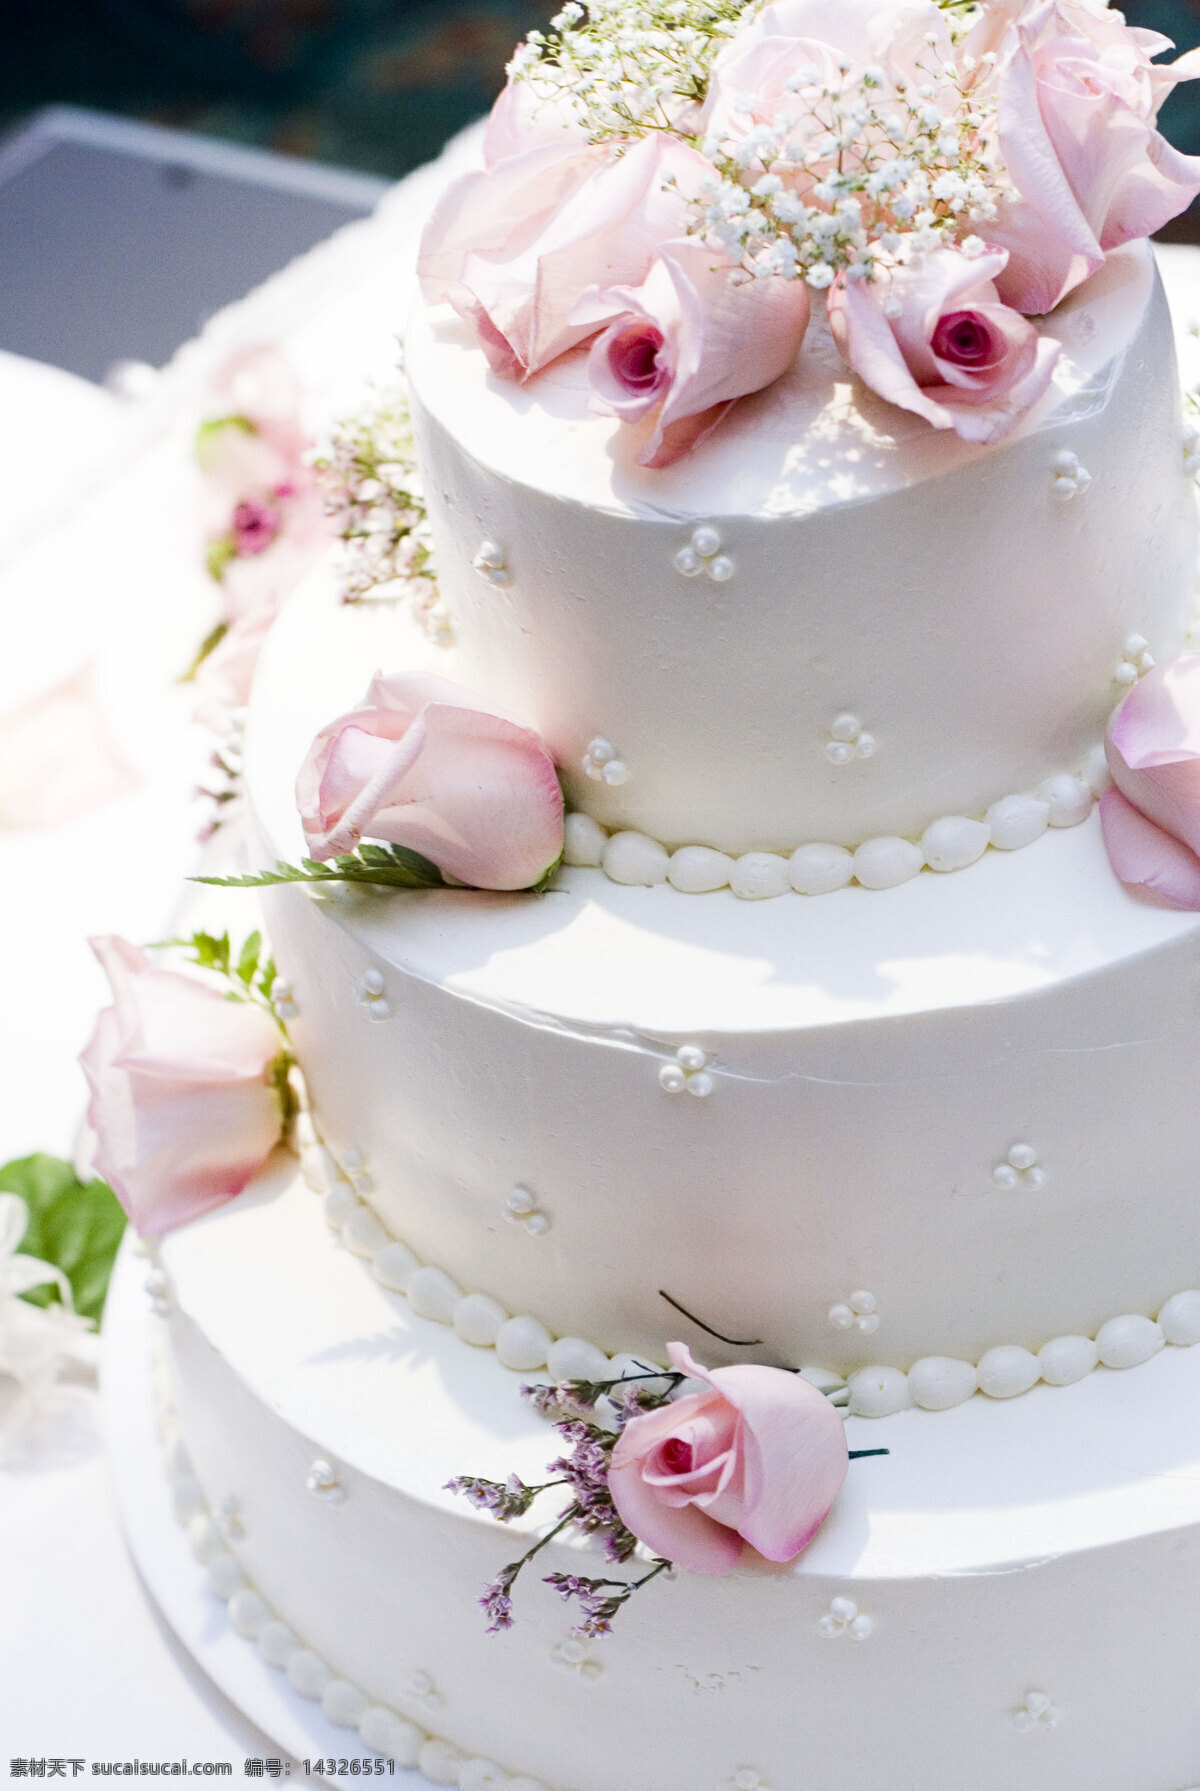 结婚蛋糕 婚礼蛋糕 结婚 玫瑰花 鲜花 花朵 温馨浪漫 其他类别 餐饮美食 白色